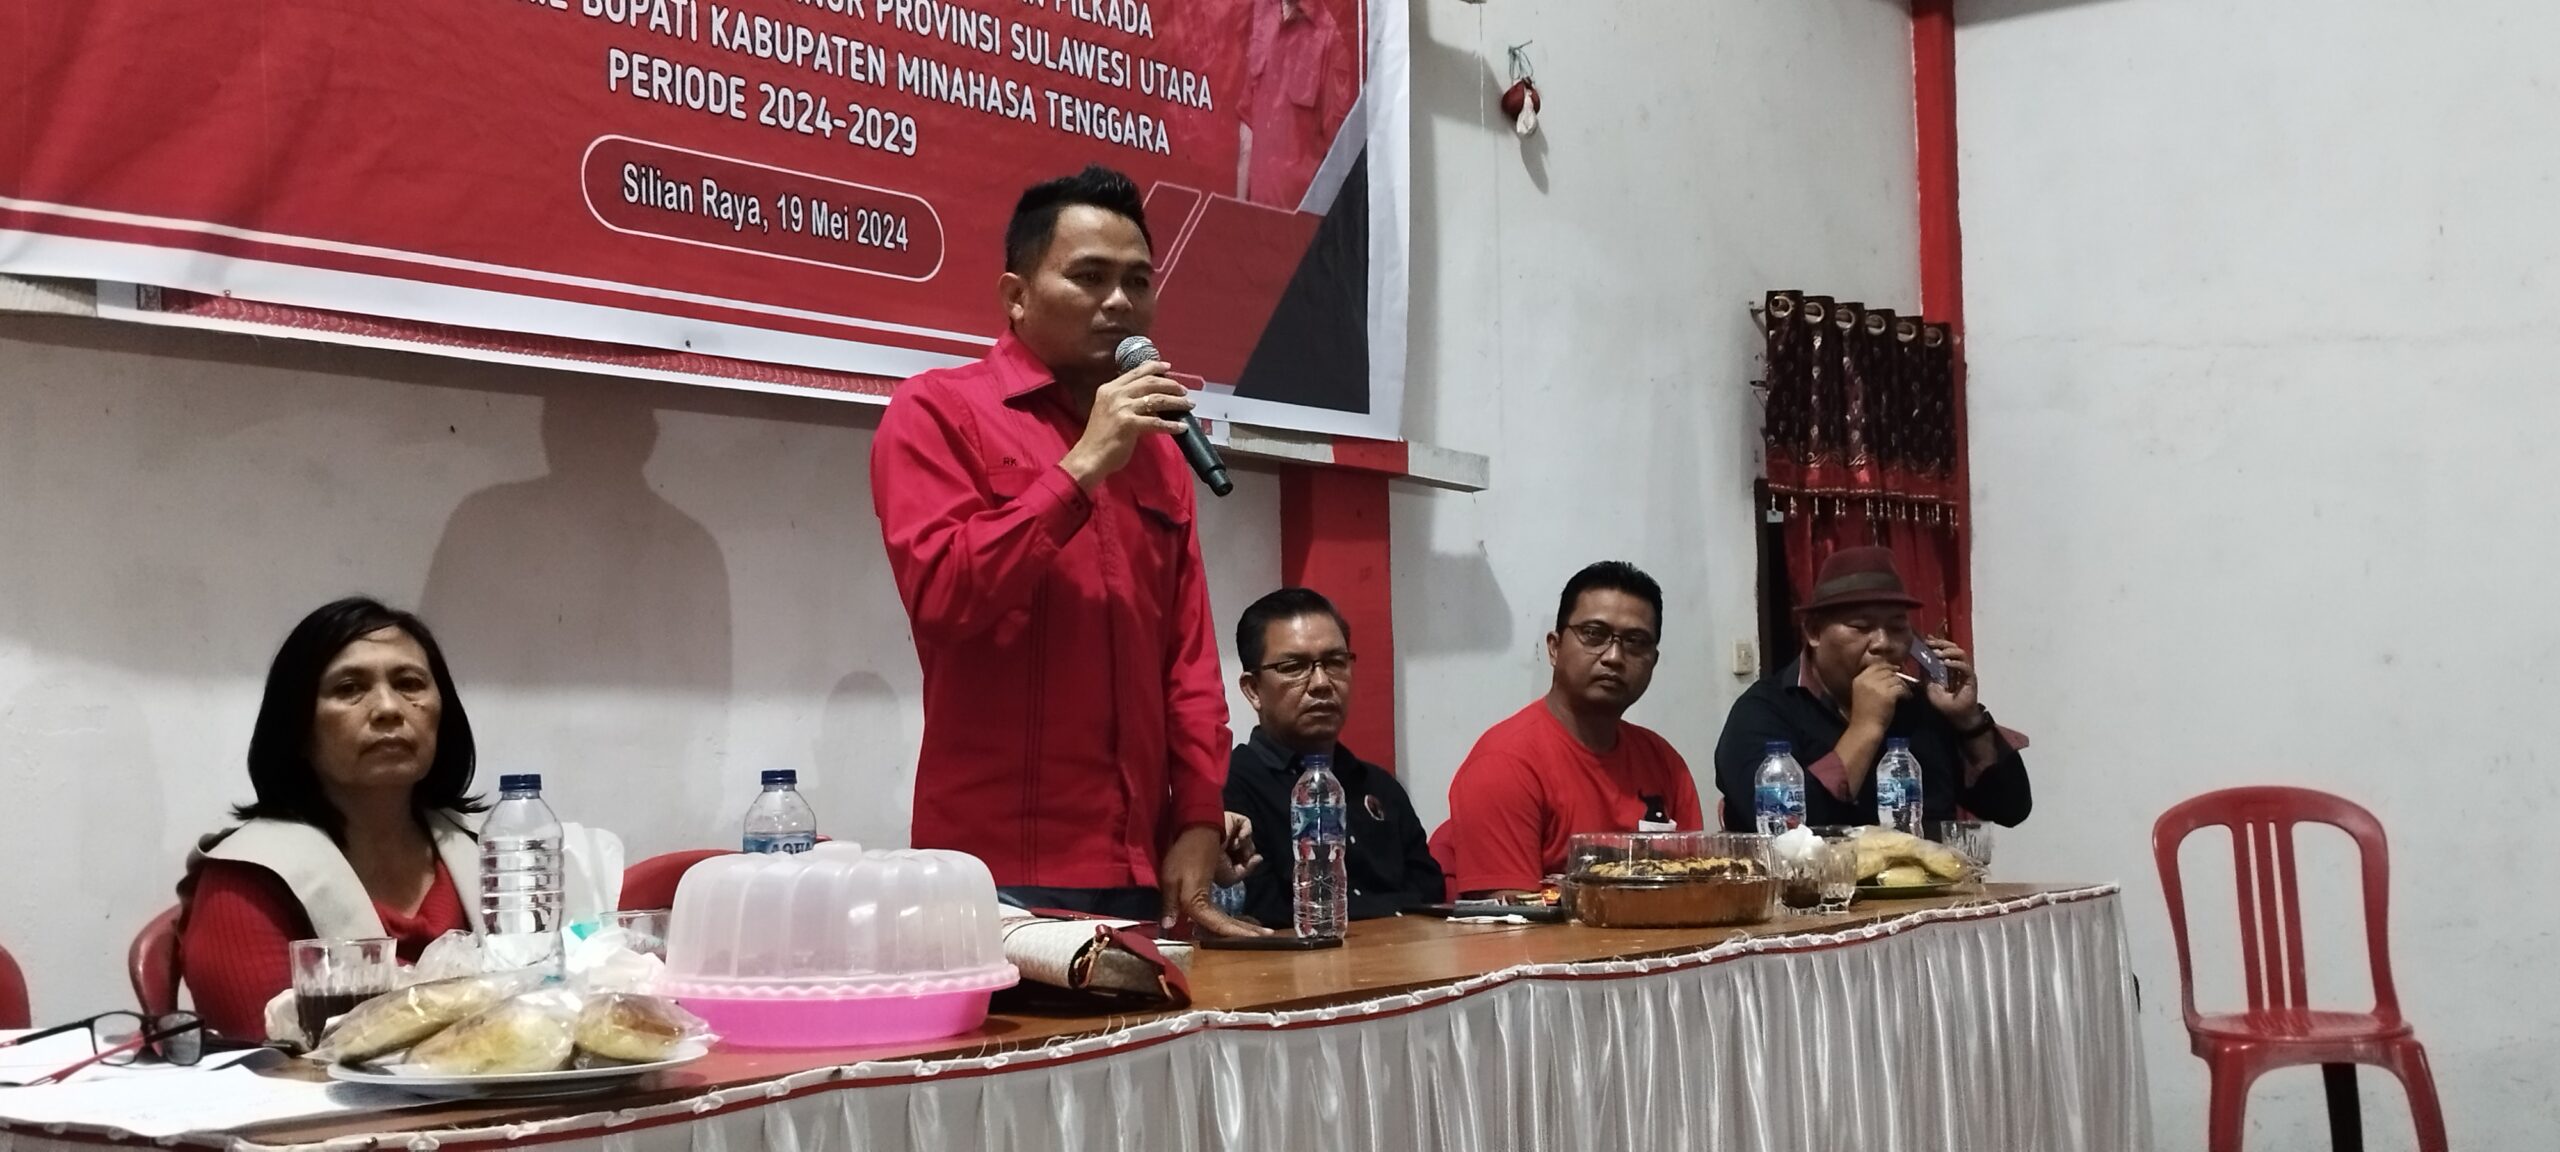 Siap Menangkan Pilkada Mitra 2024, Ronald Kandoli Bakar Semangat PAC dan Ranting PDIP Silian Raya